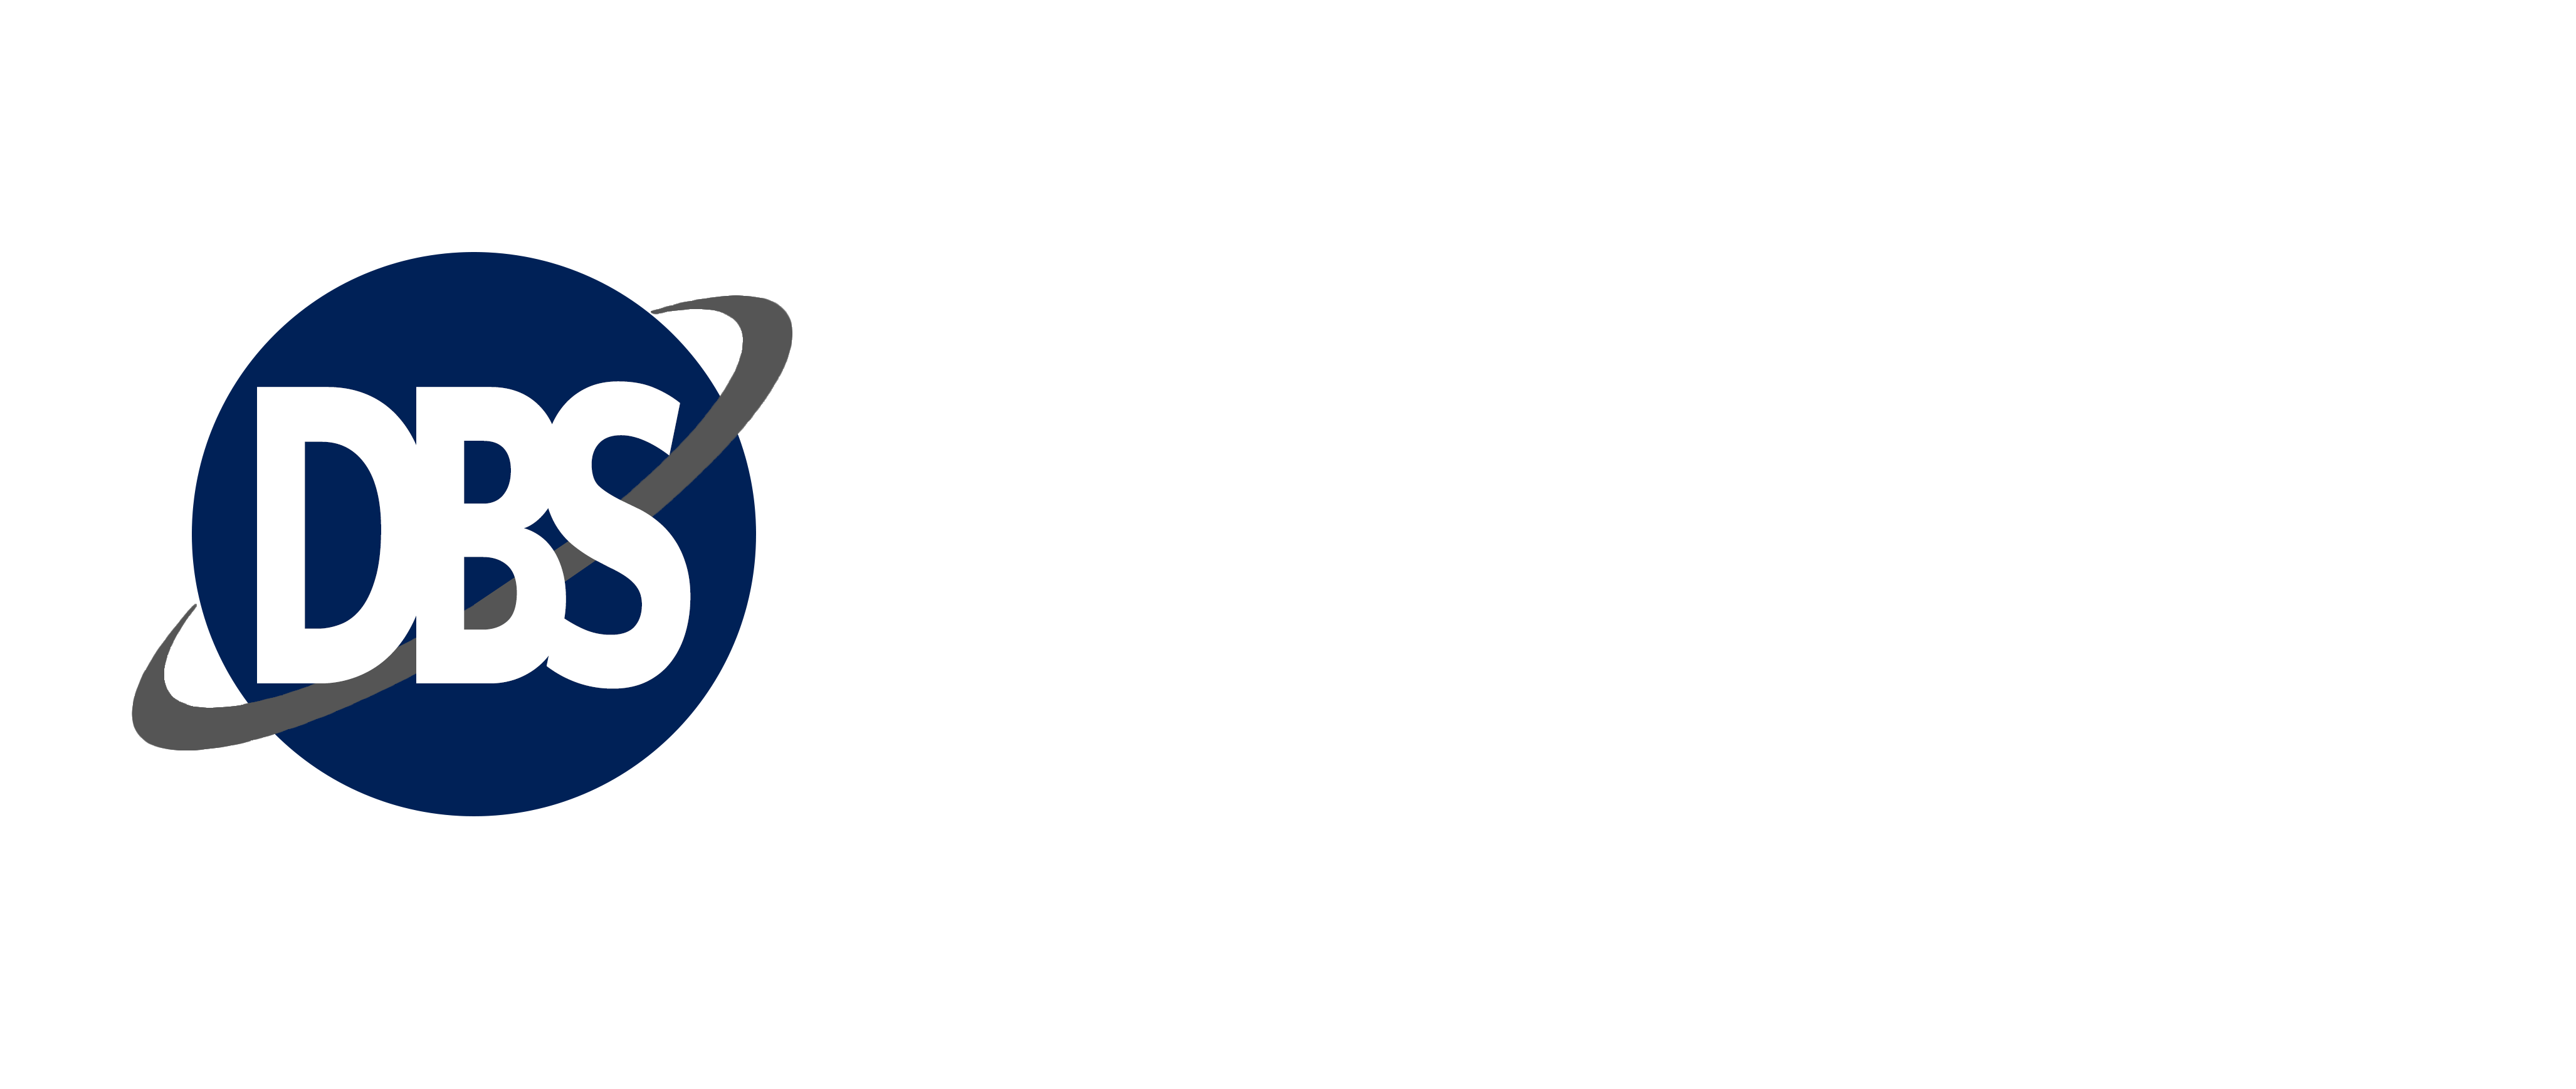 Dfern BPO Solutions